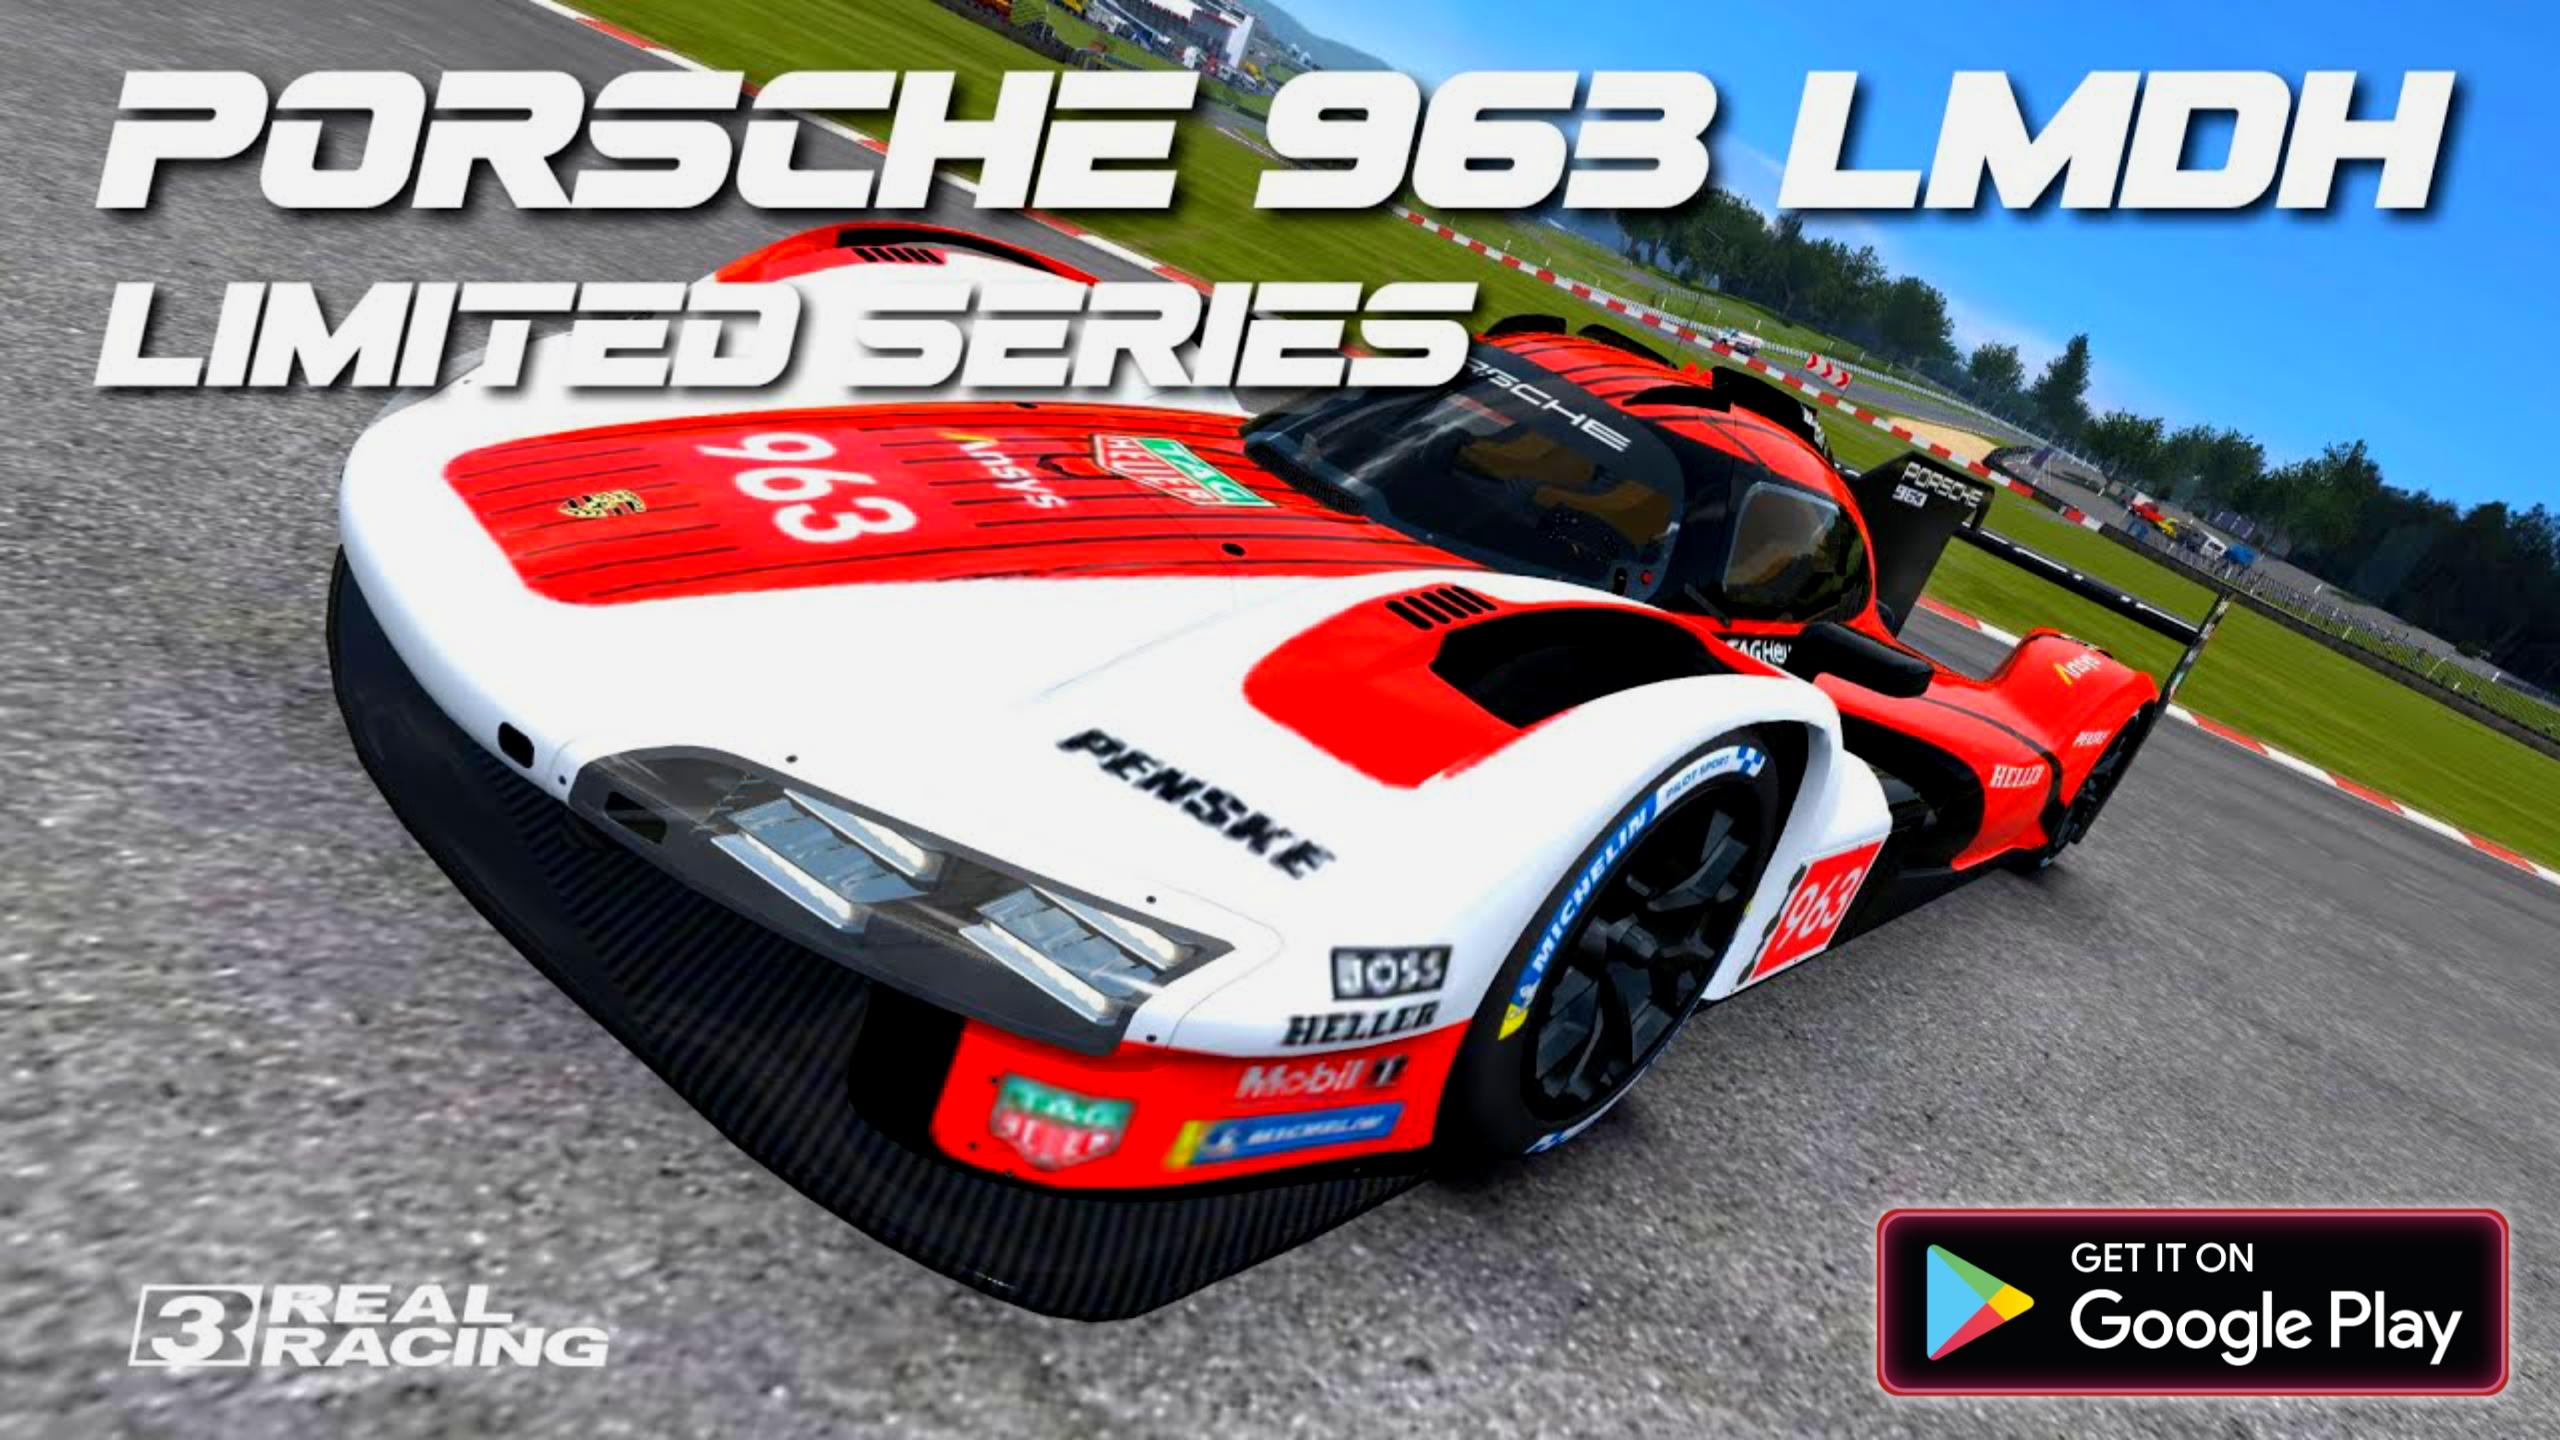 Real Racing 3: Porsche 963 LMDH 